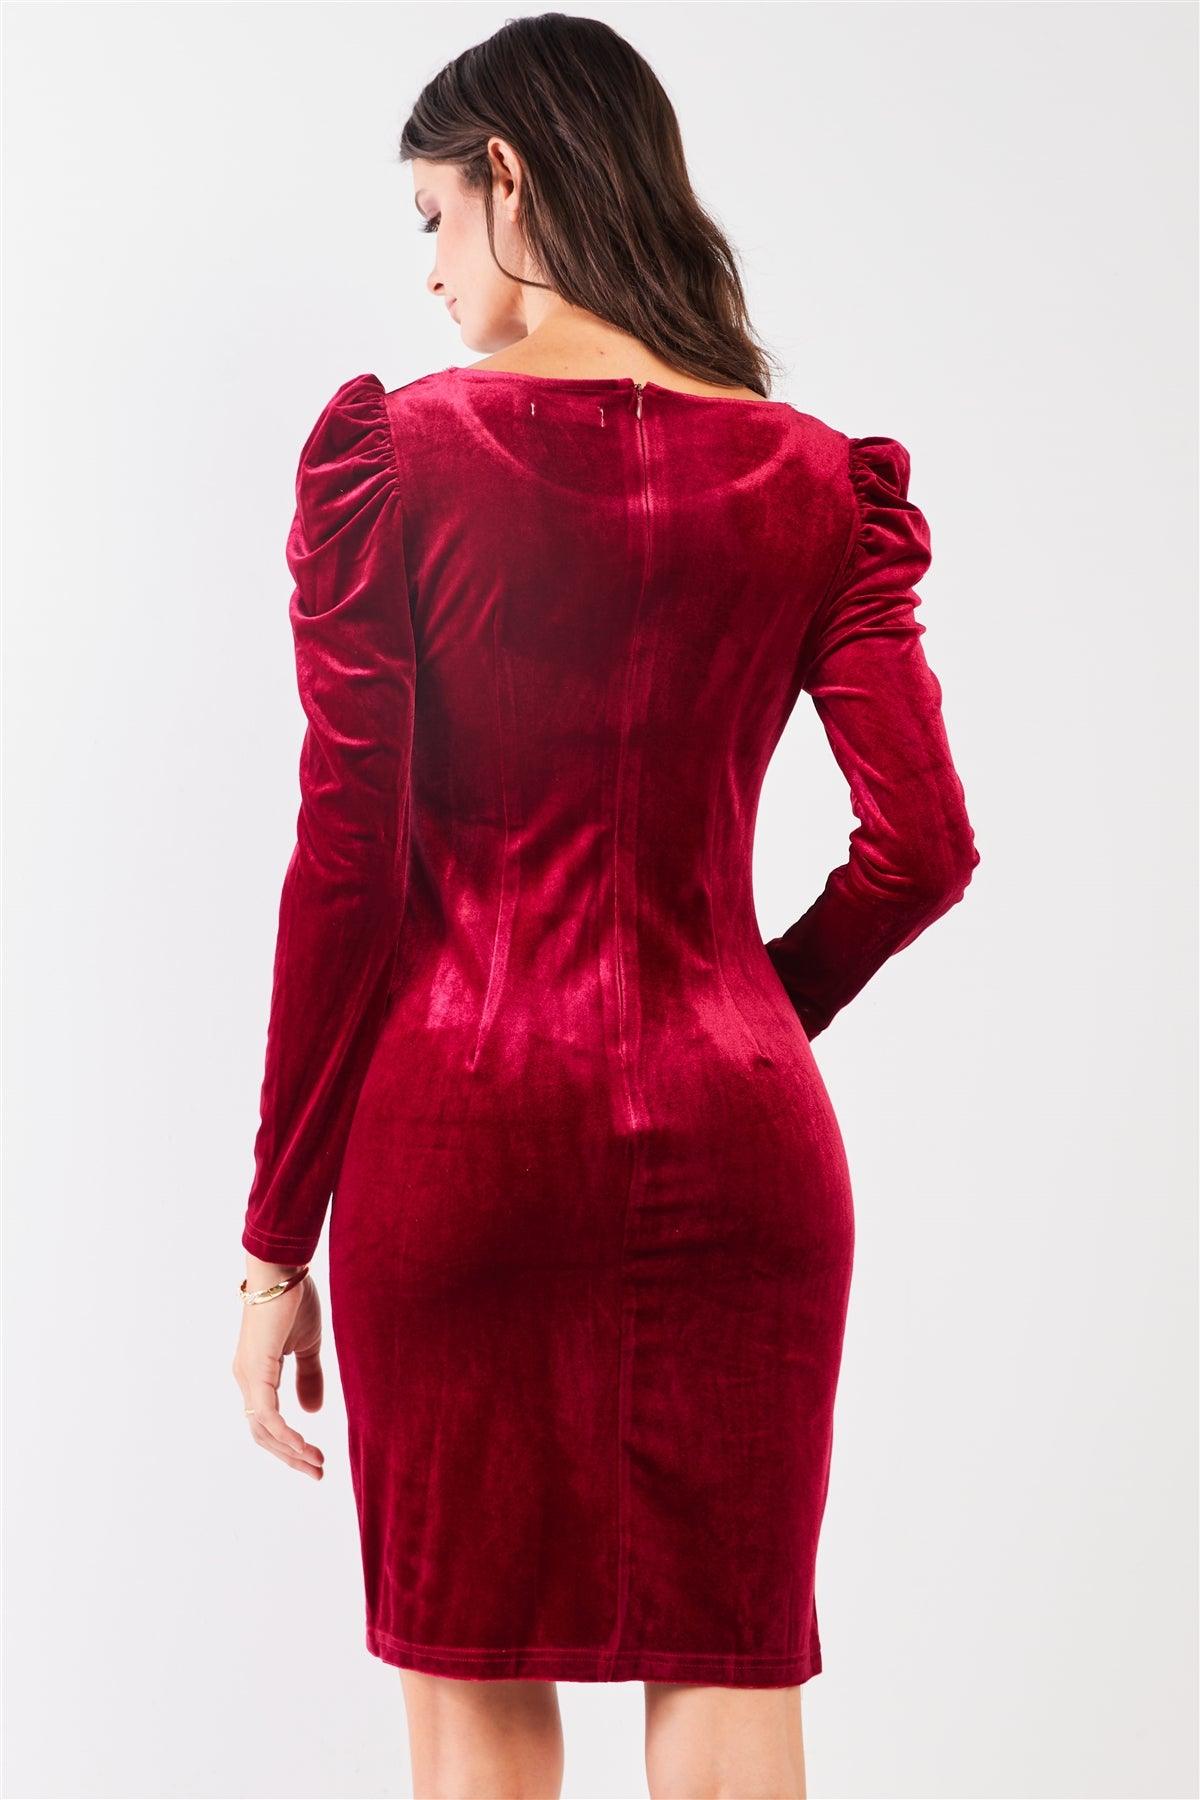 Burgundy Red Velvet Rhinestone Neckline Trim Juliet Long Sleeve Knee Length Slit Dress /2-2-2